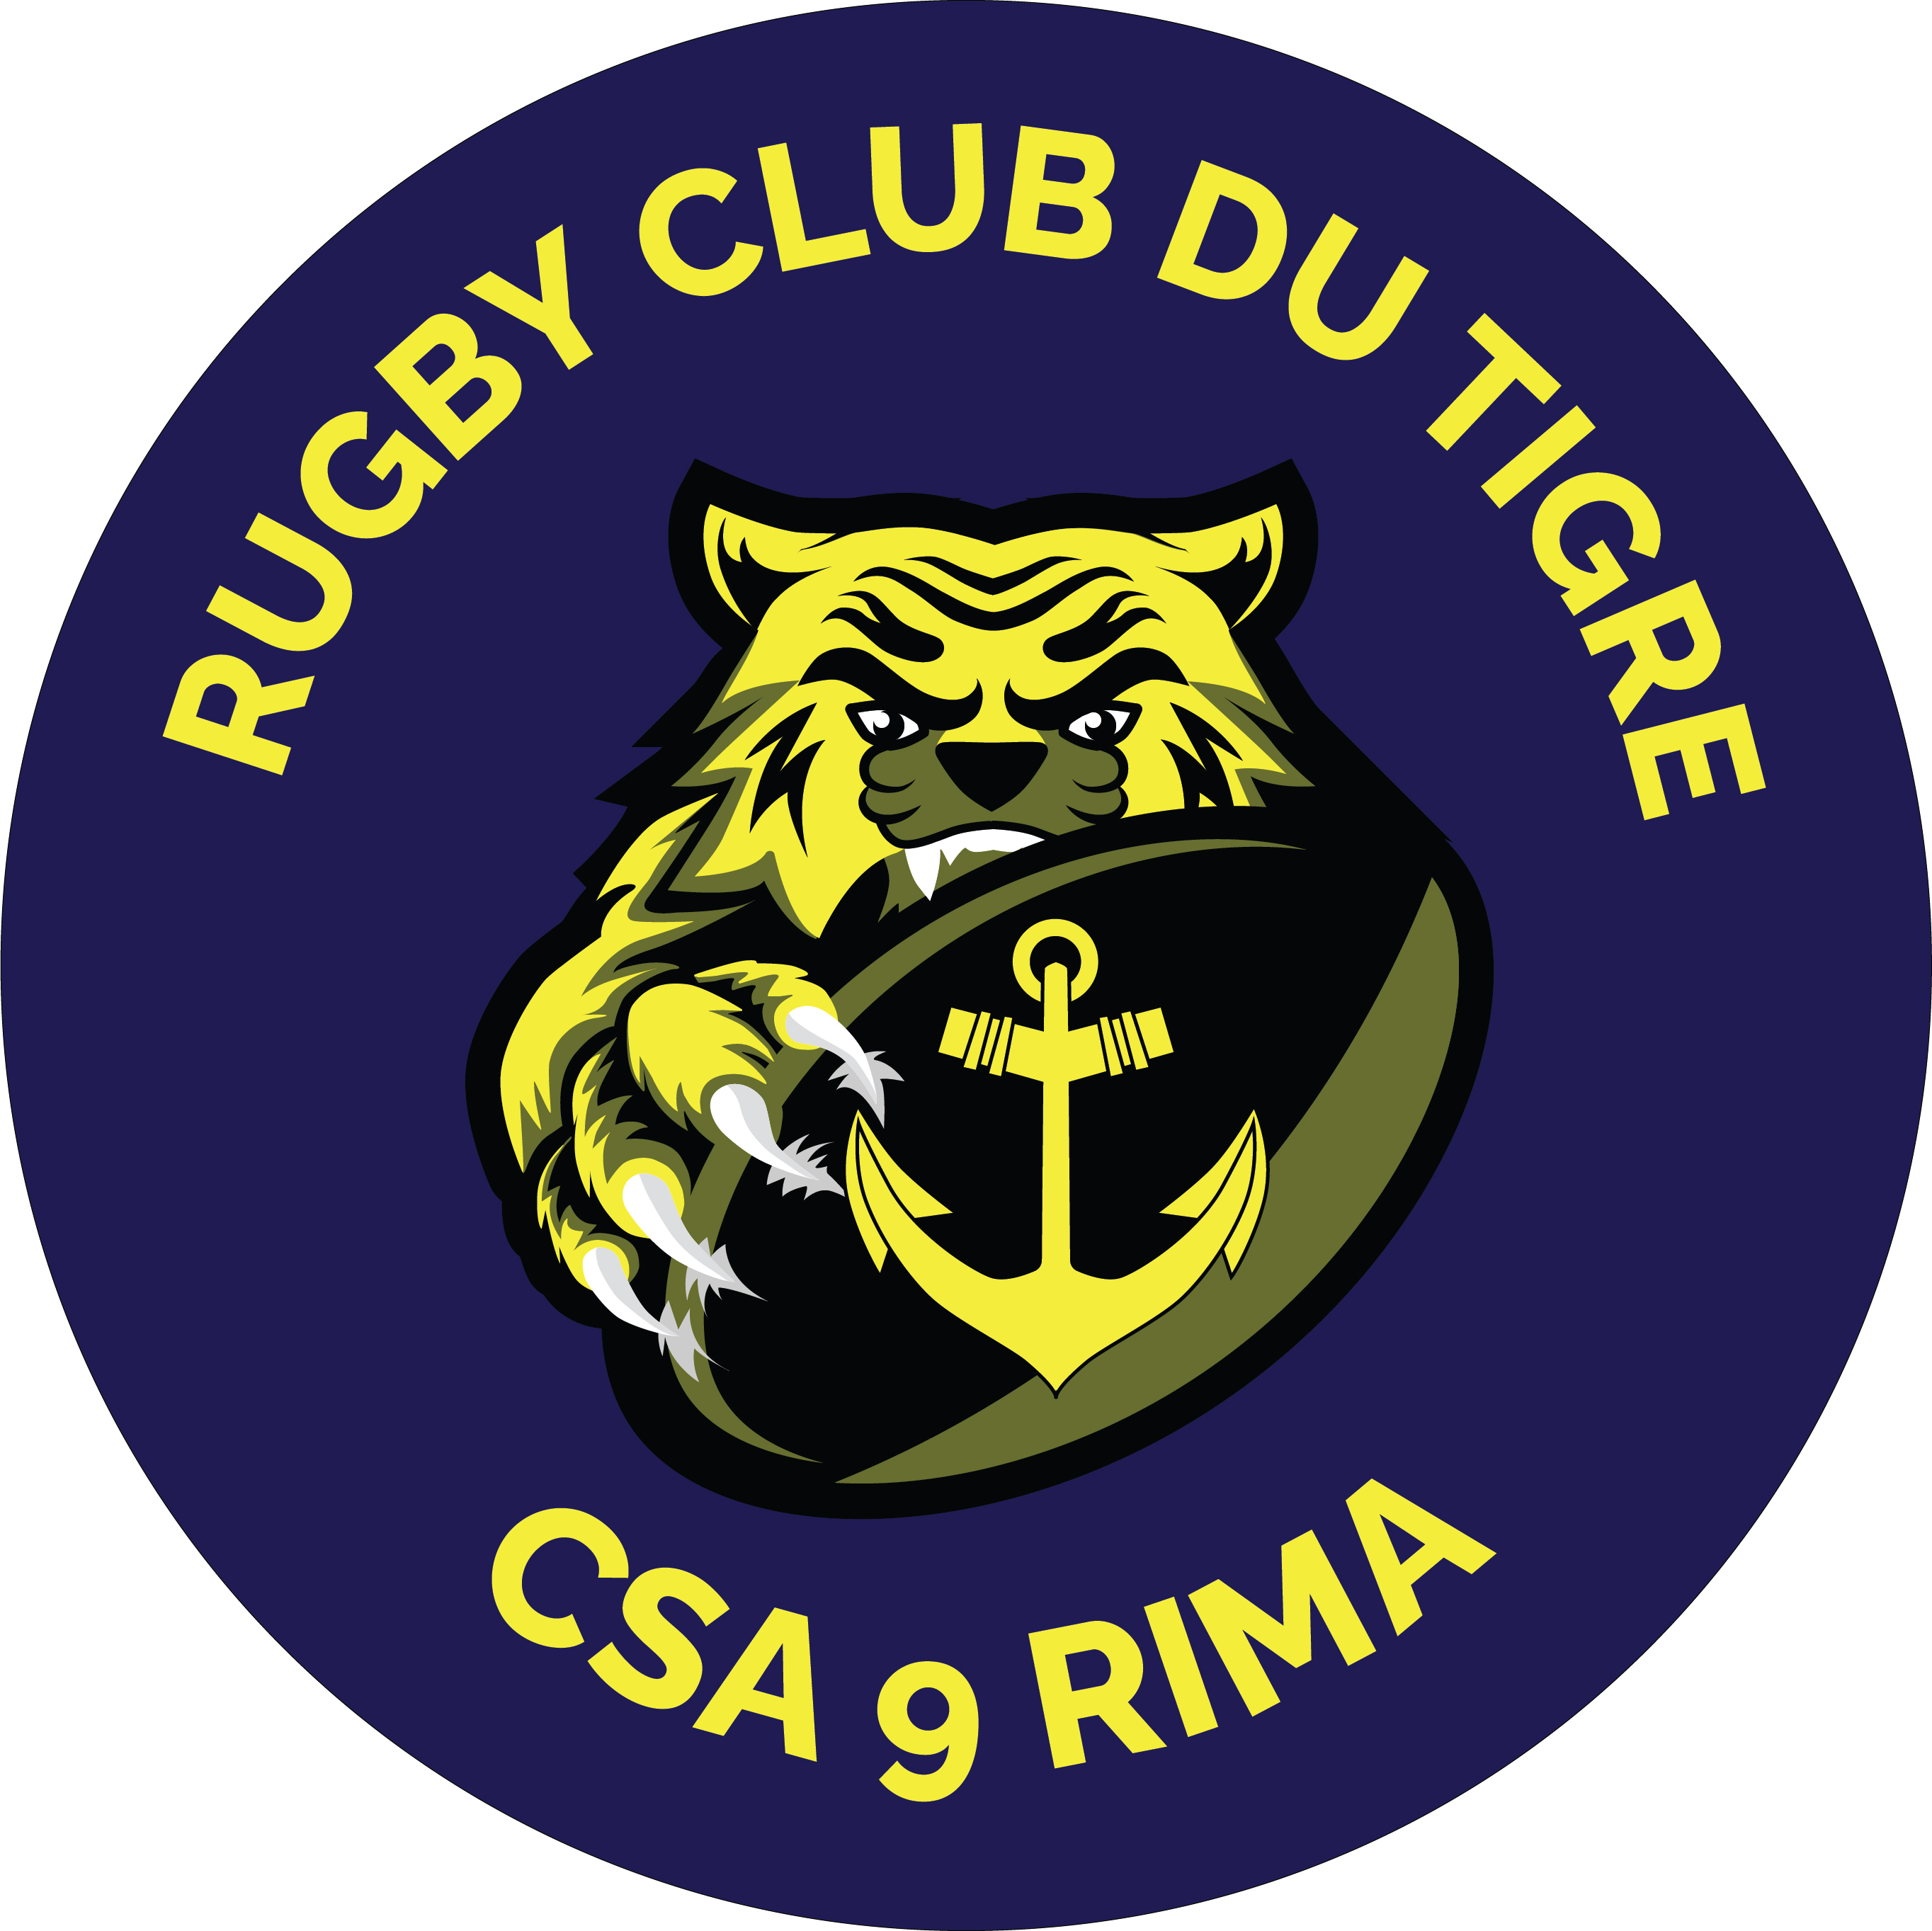 rugby-club-du-tigre-logo-620b87fcad63f992104674.jpg